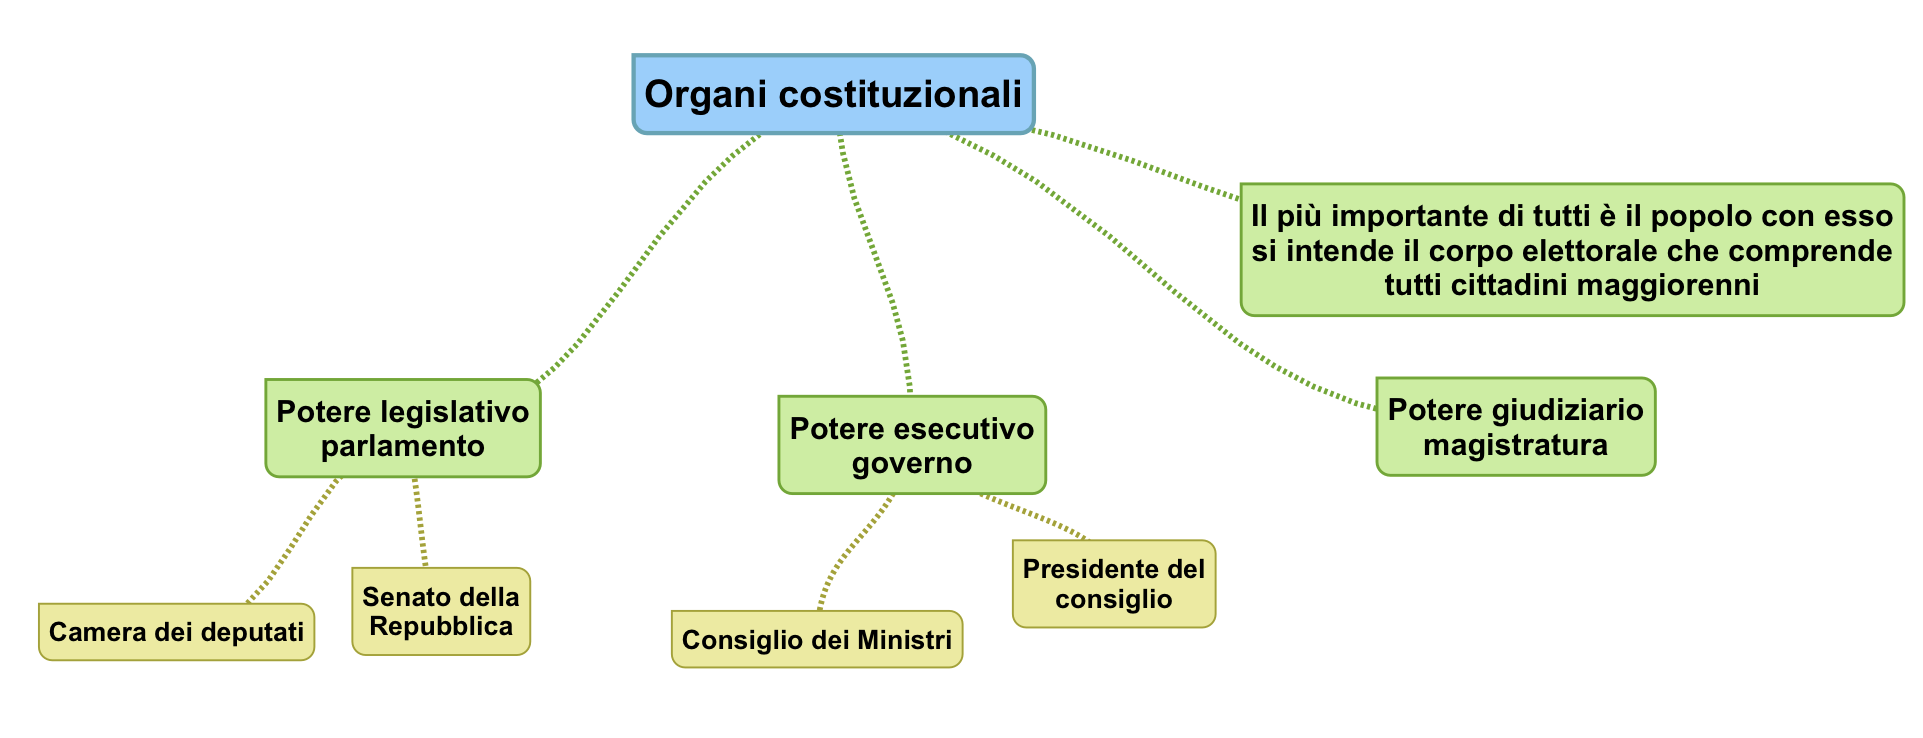 Organi costituzionali